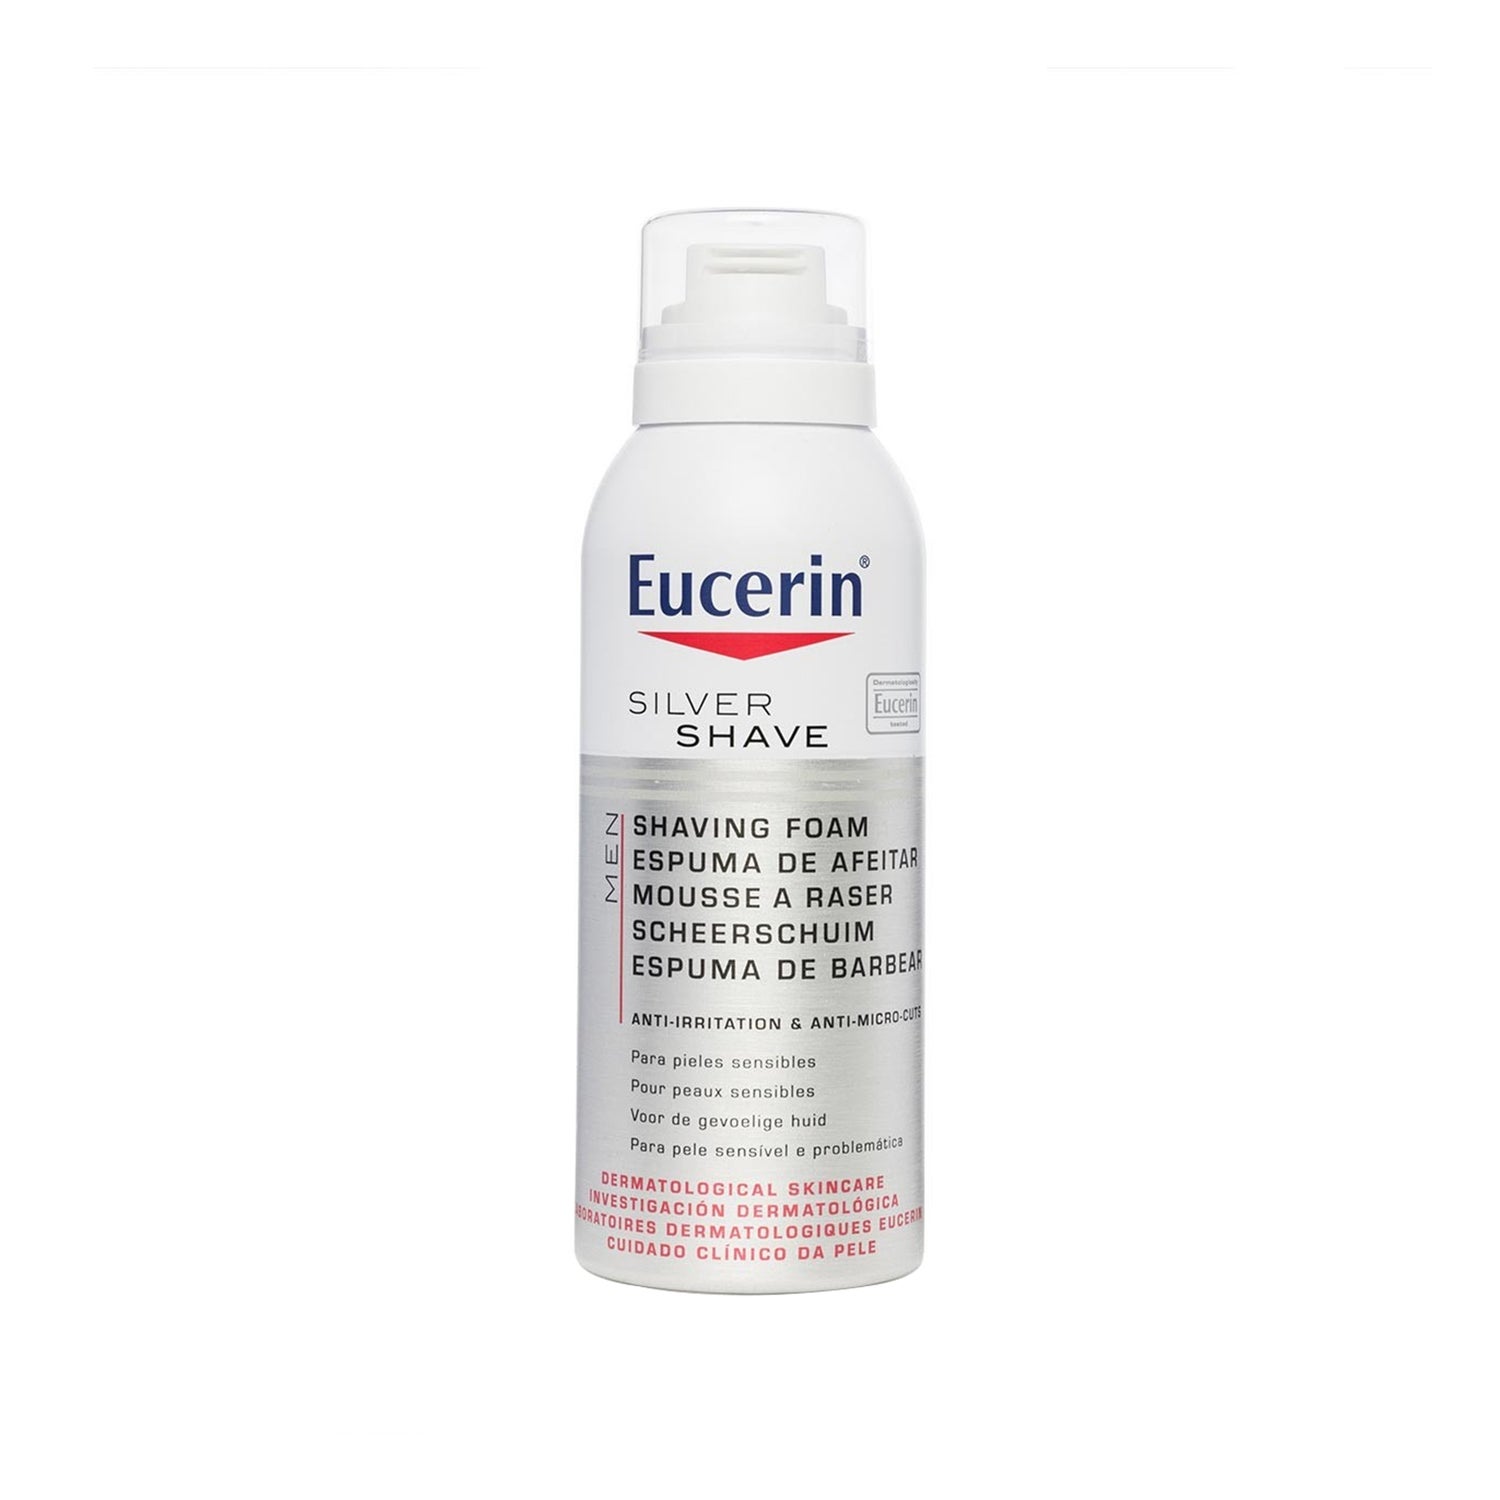 Eucerin® Shave espuma de afeitar 150ml |